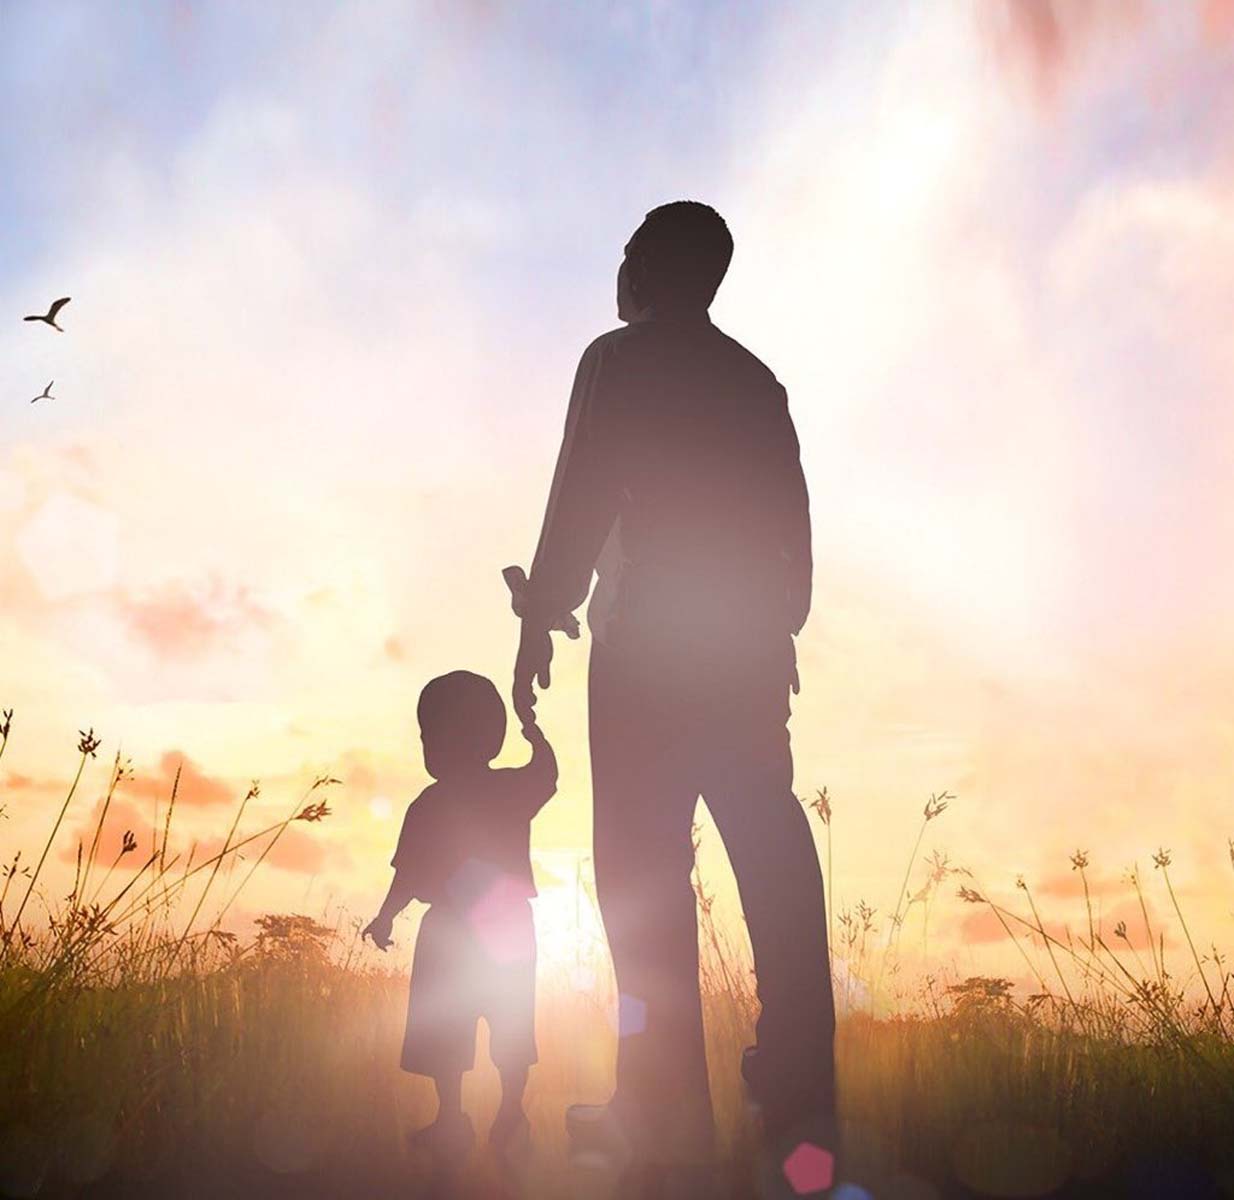 Babalar günü alınacak en anlamlı hediyeler 2022 | Babalar Günü evde yapılacak hediyeler 2022